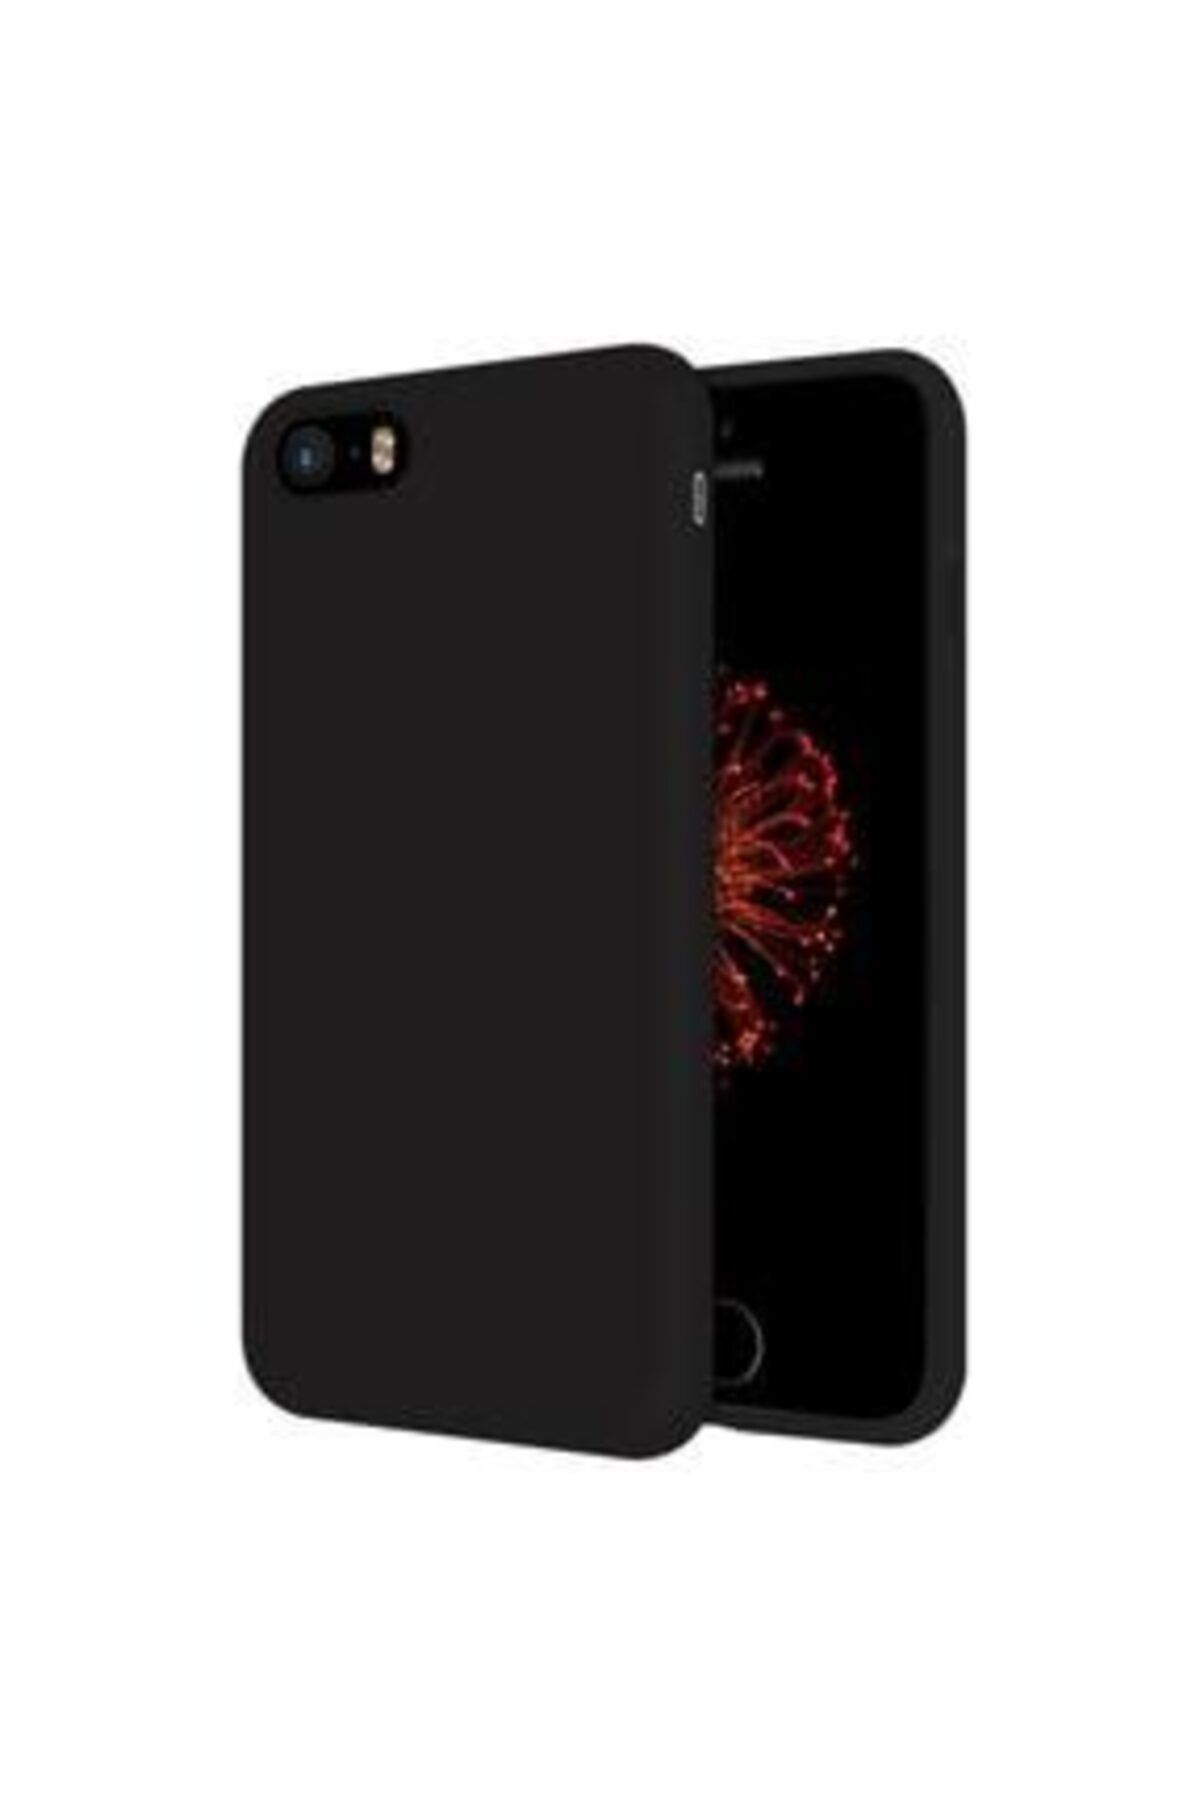 E TicaShop Apple Iphone 5 / 5s Kılıf Içi Kadife Lansman Silikon Kılıf - Siyah